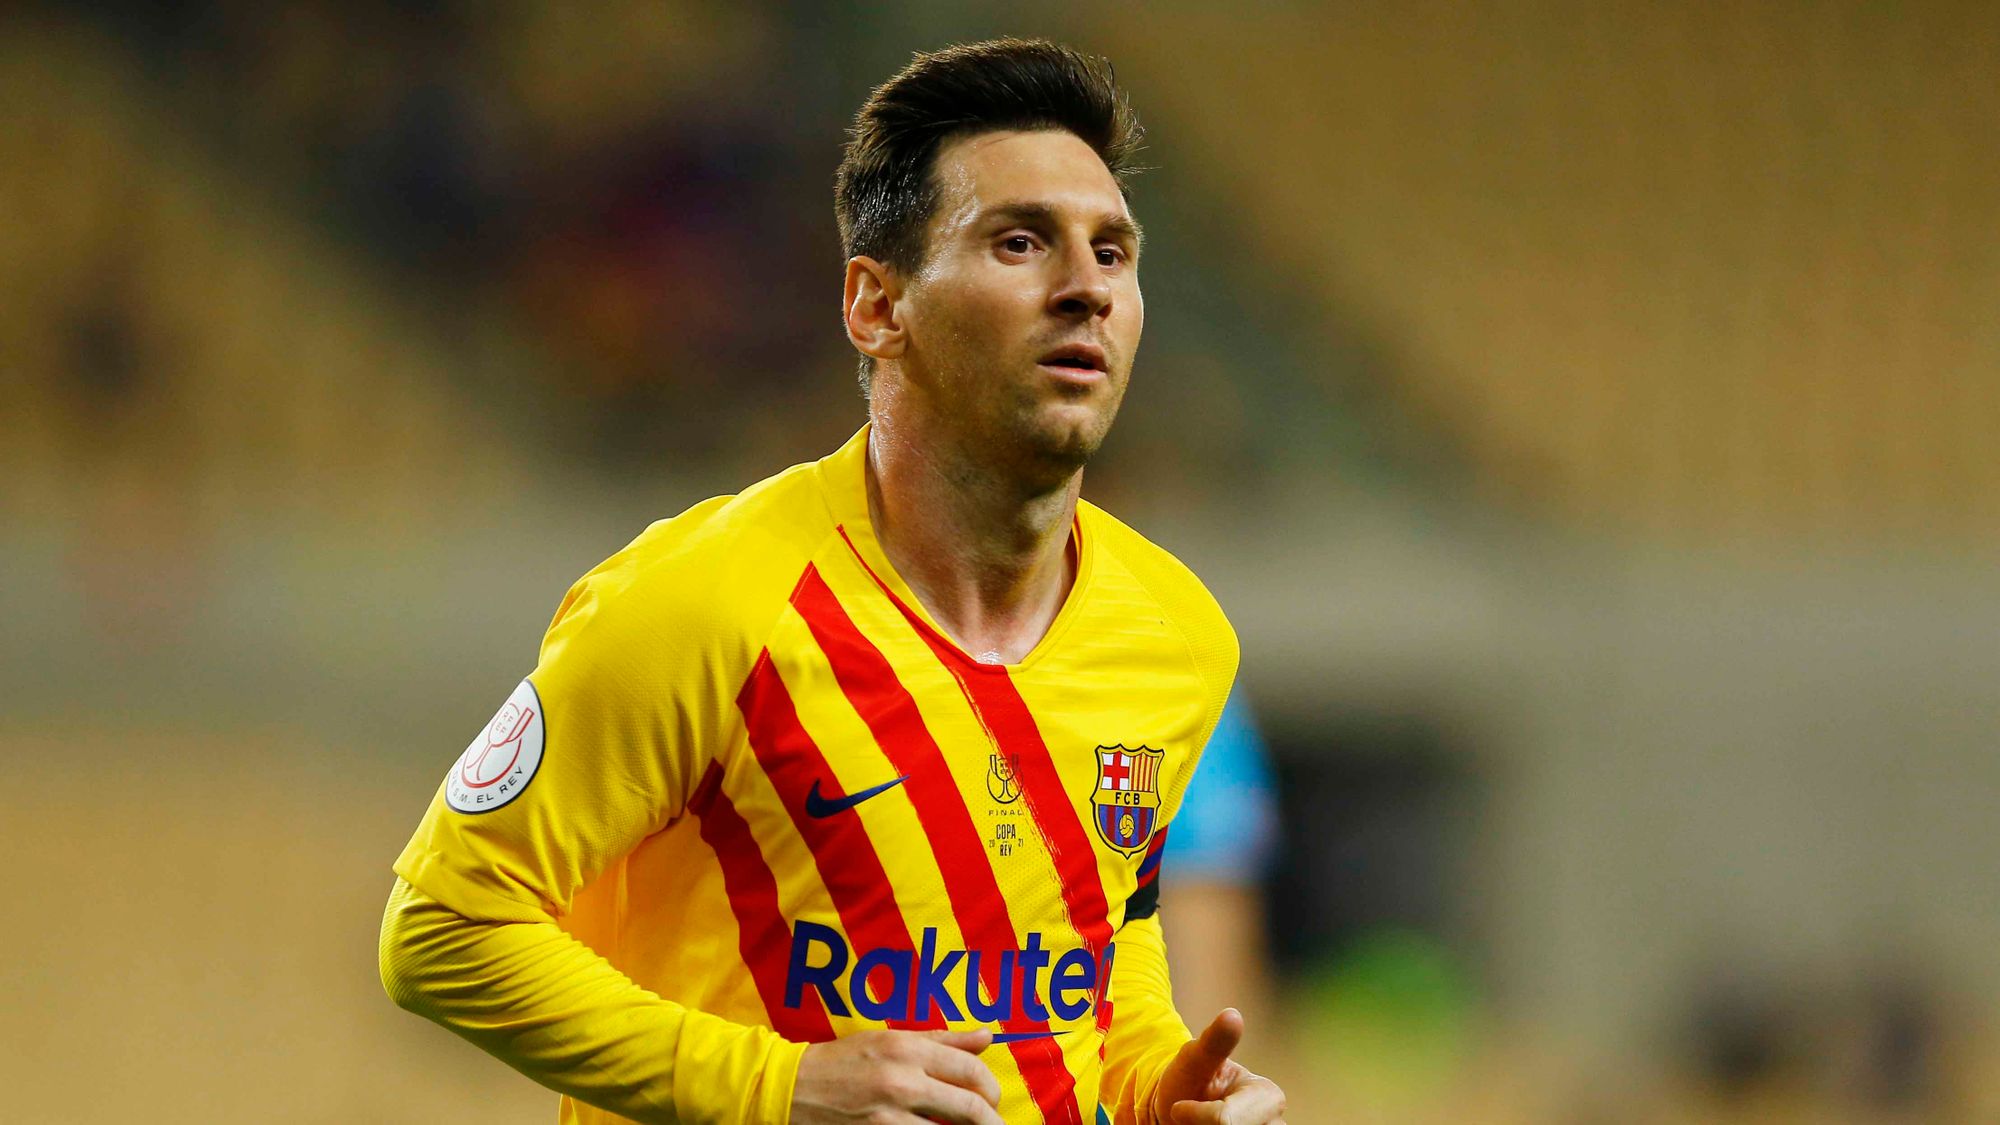 2. Lionel Messi, Barcelona: 340 partidos de La Liga, de los cuales jugó el 93.55% de los minutos posibles.